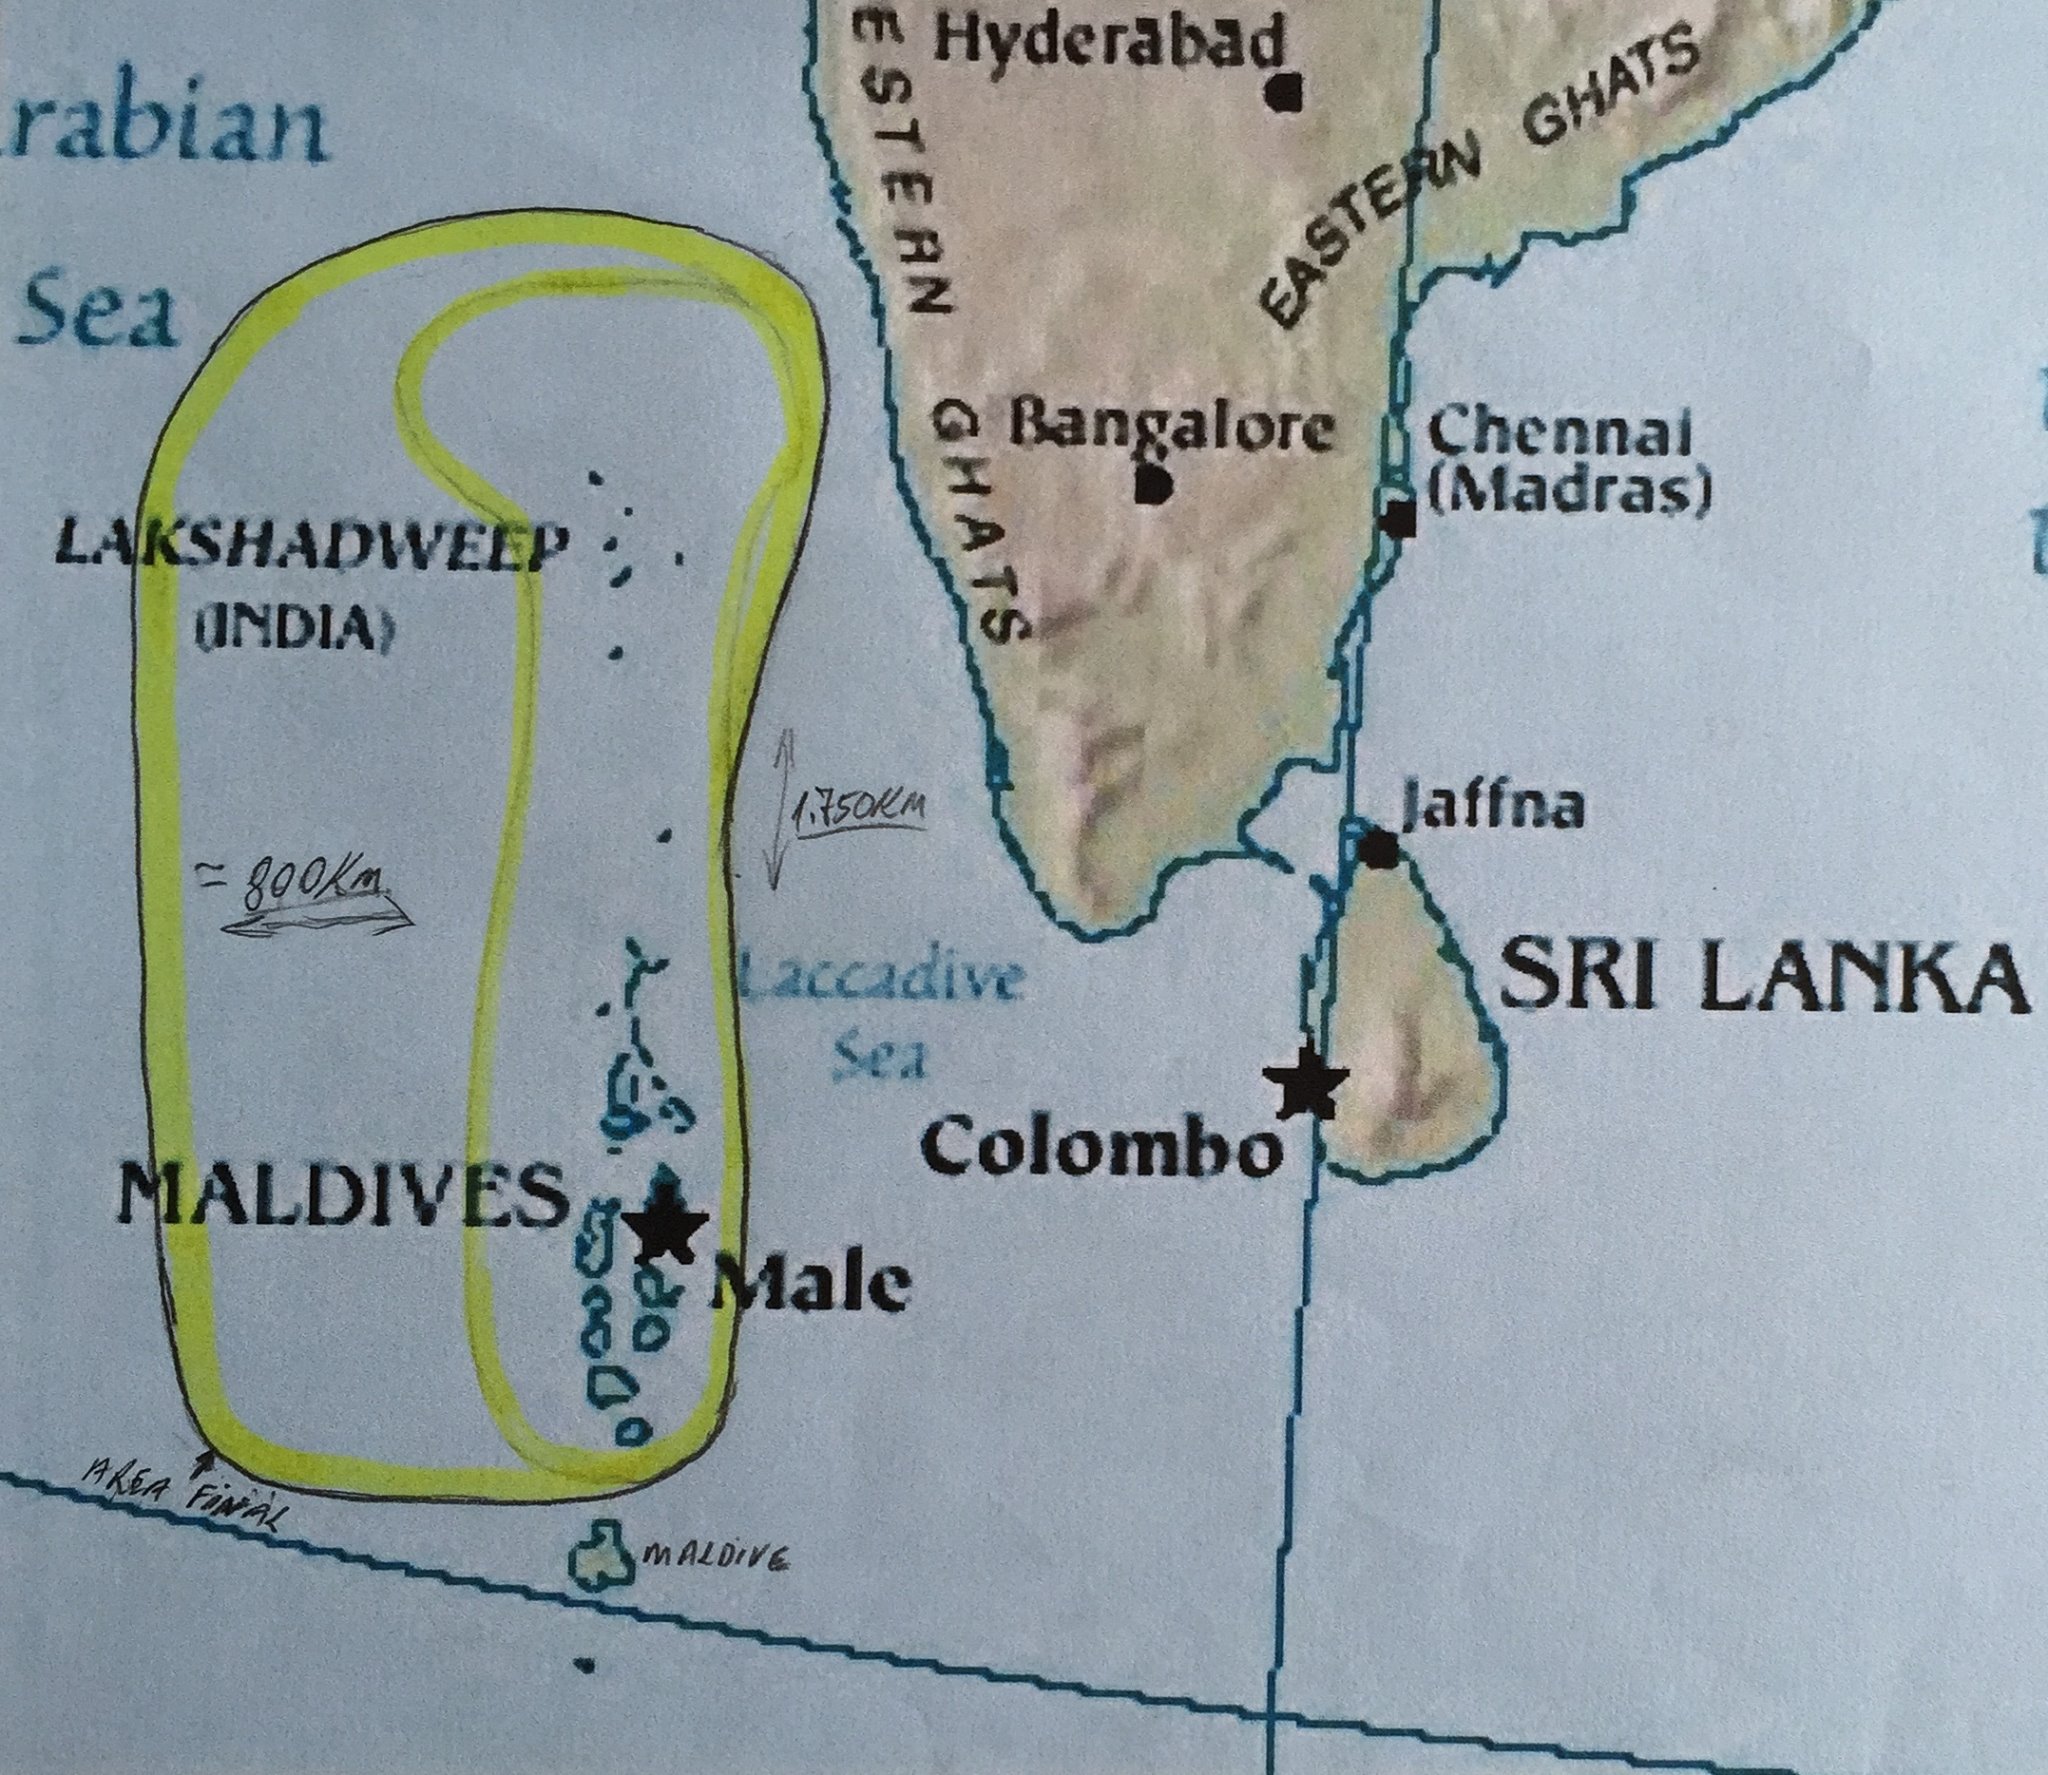 Maldives Lakshadweep 